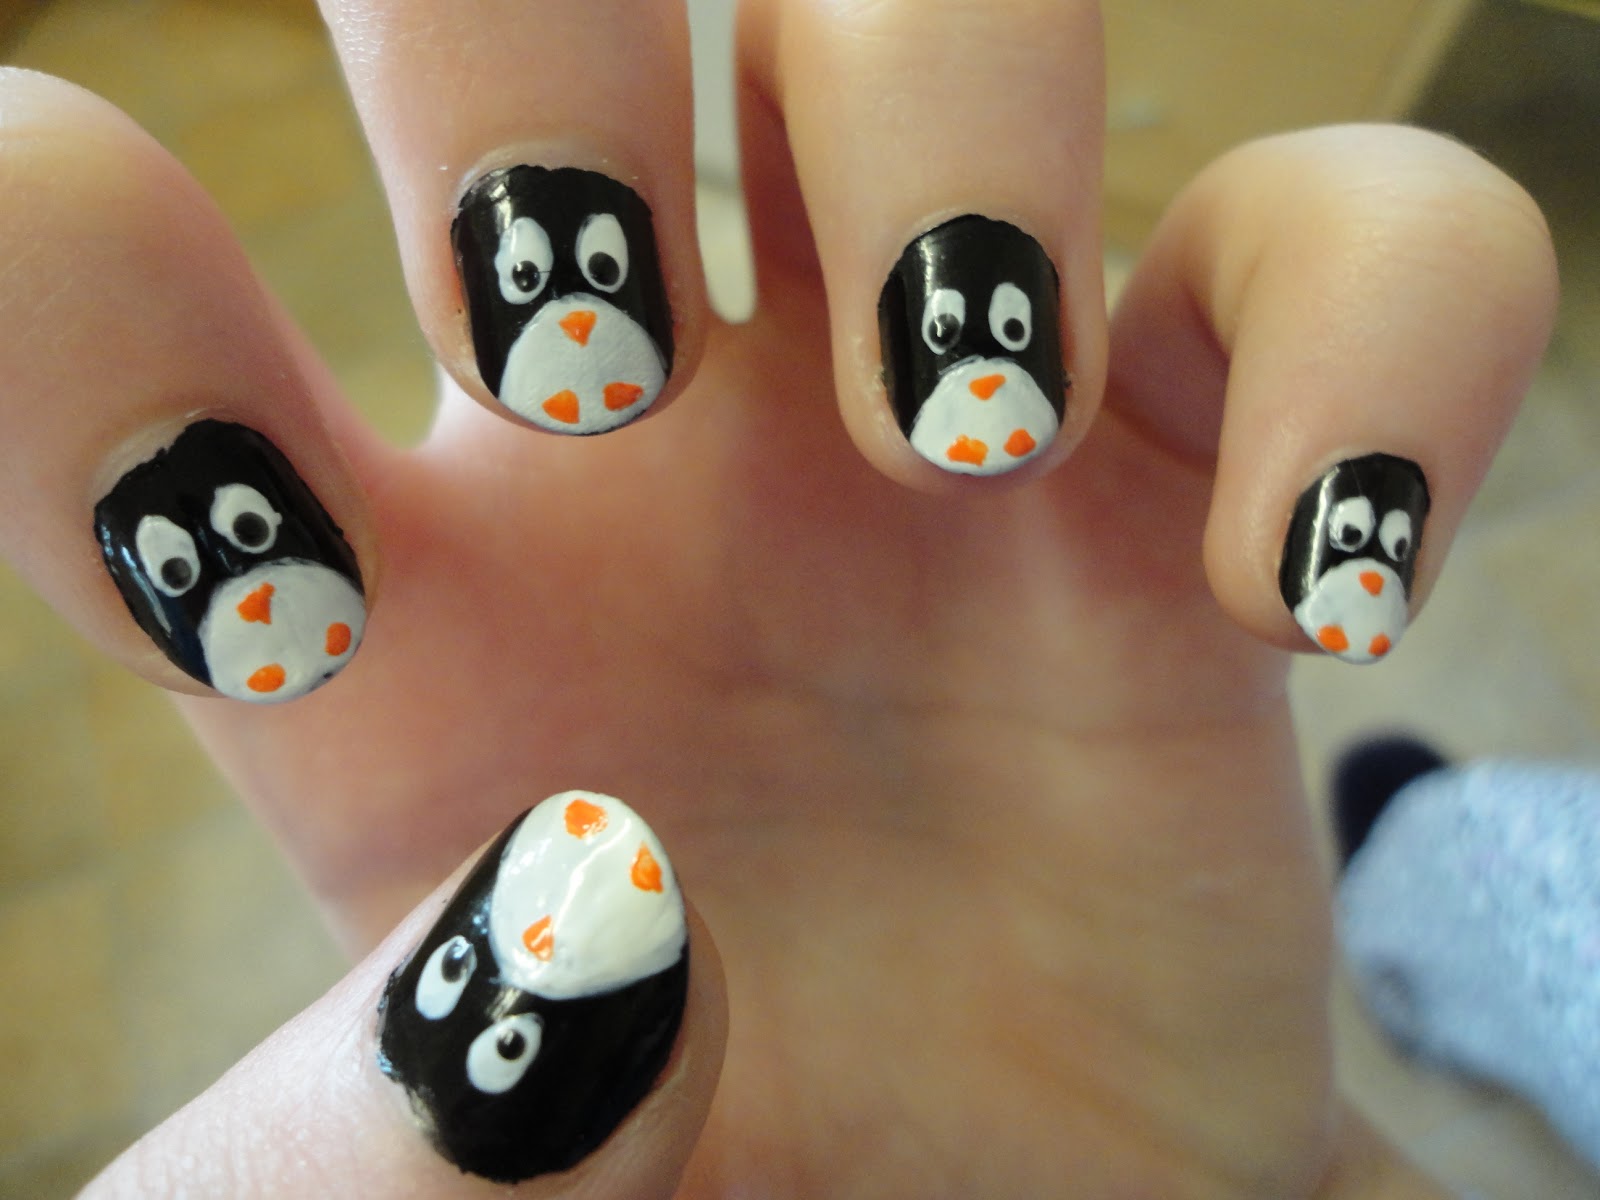 Nail Art: Penguin nails!